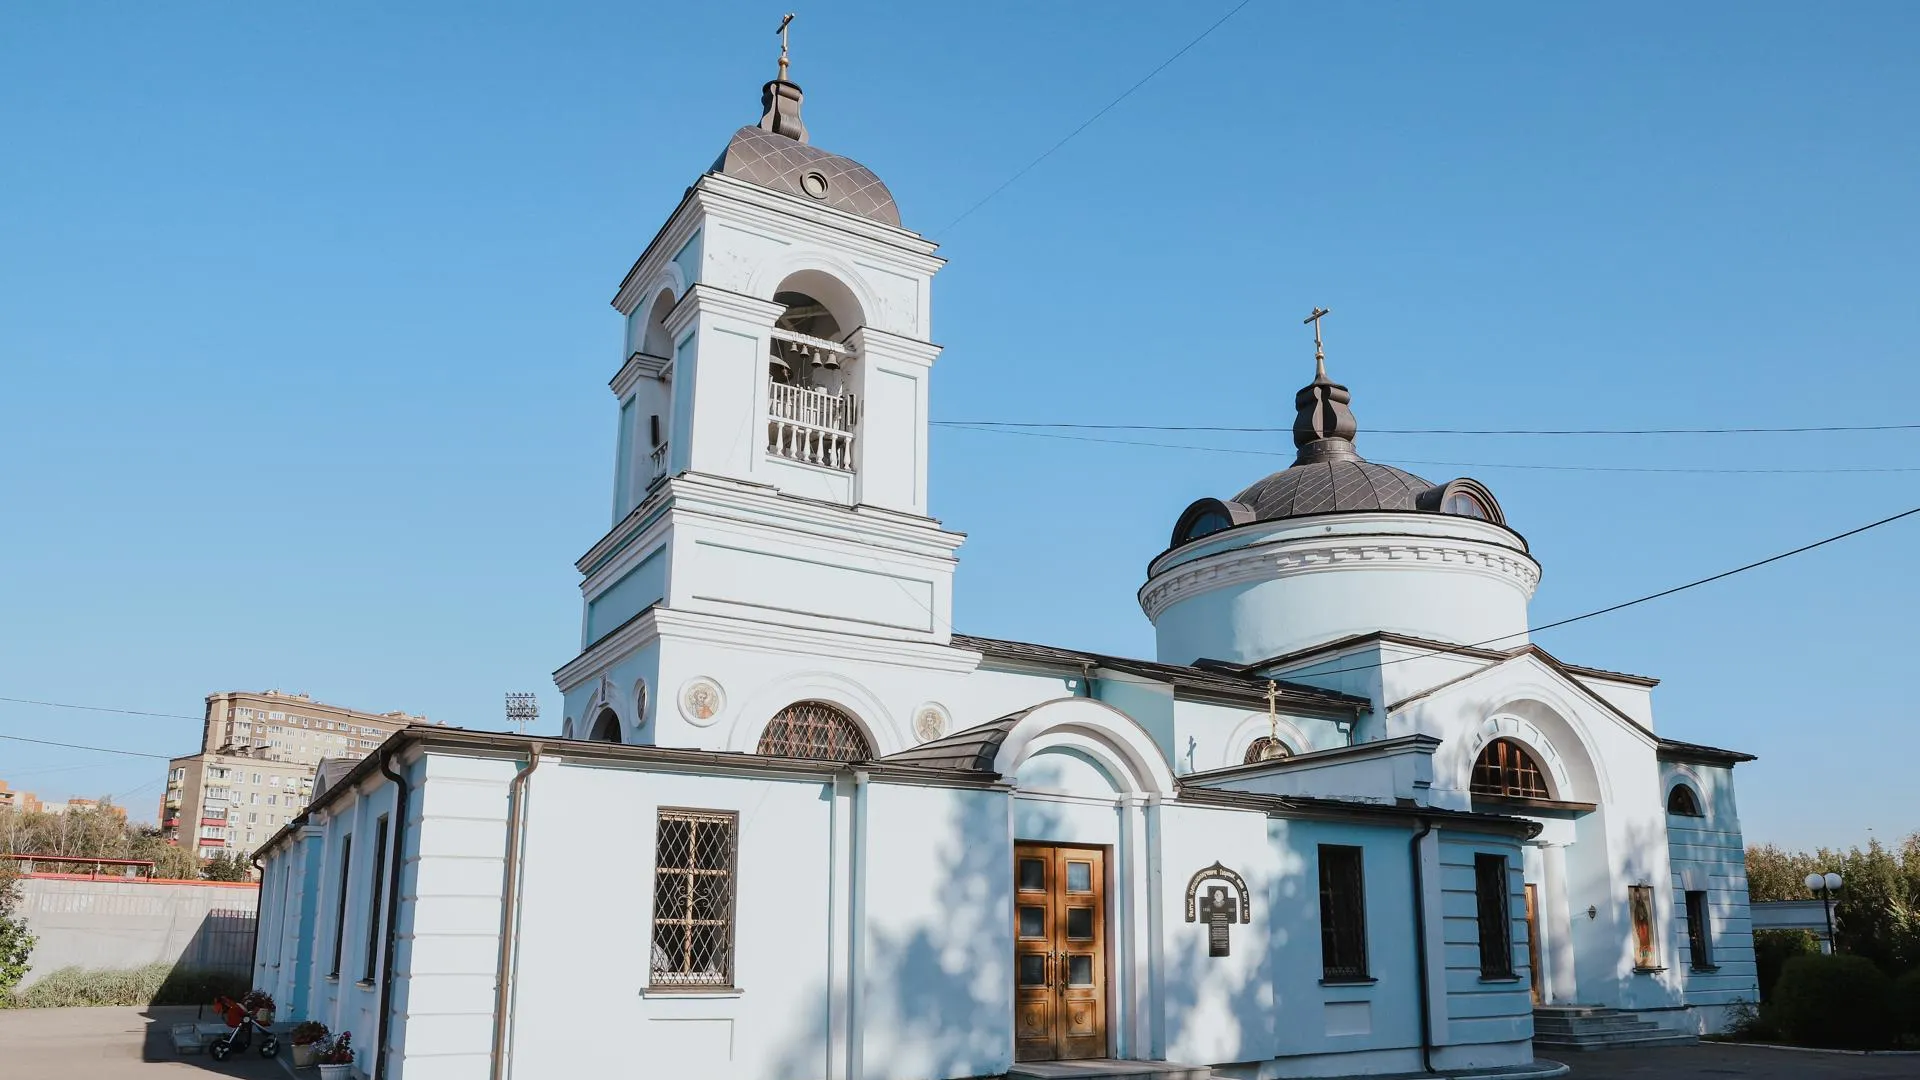 Епископ Сергиево-Посадский и Дмитровский Кирилл освятил новый придел храма в Химках